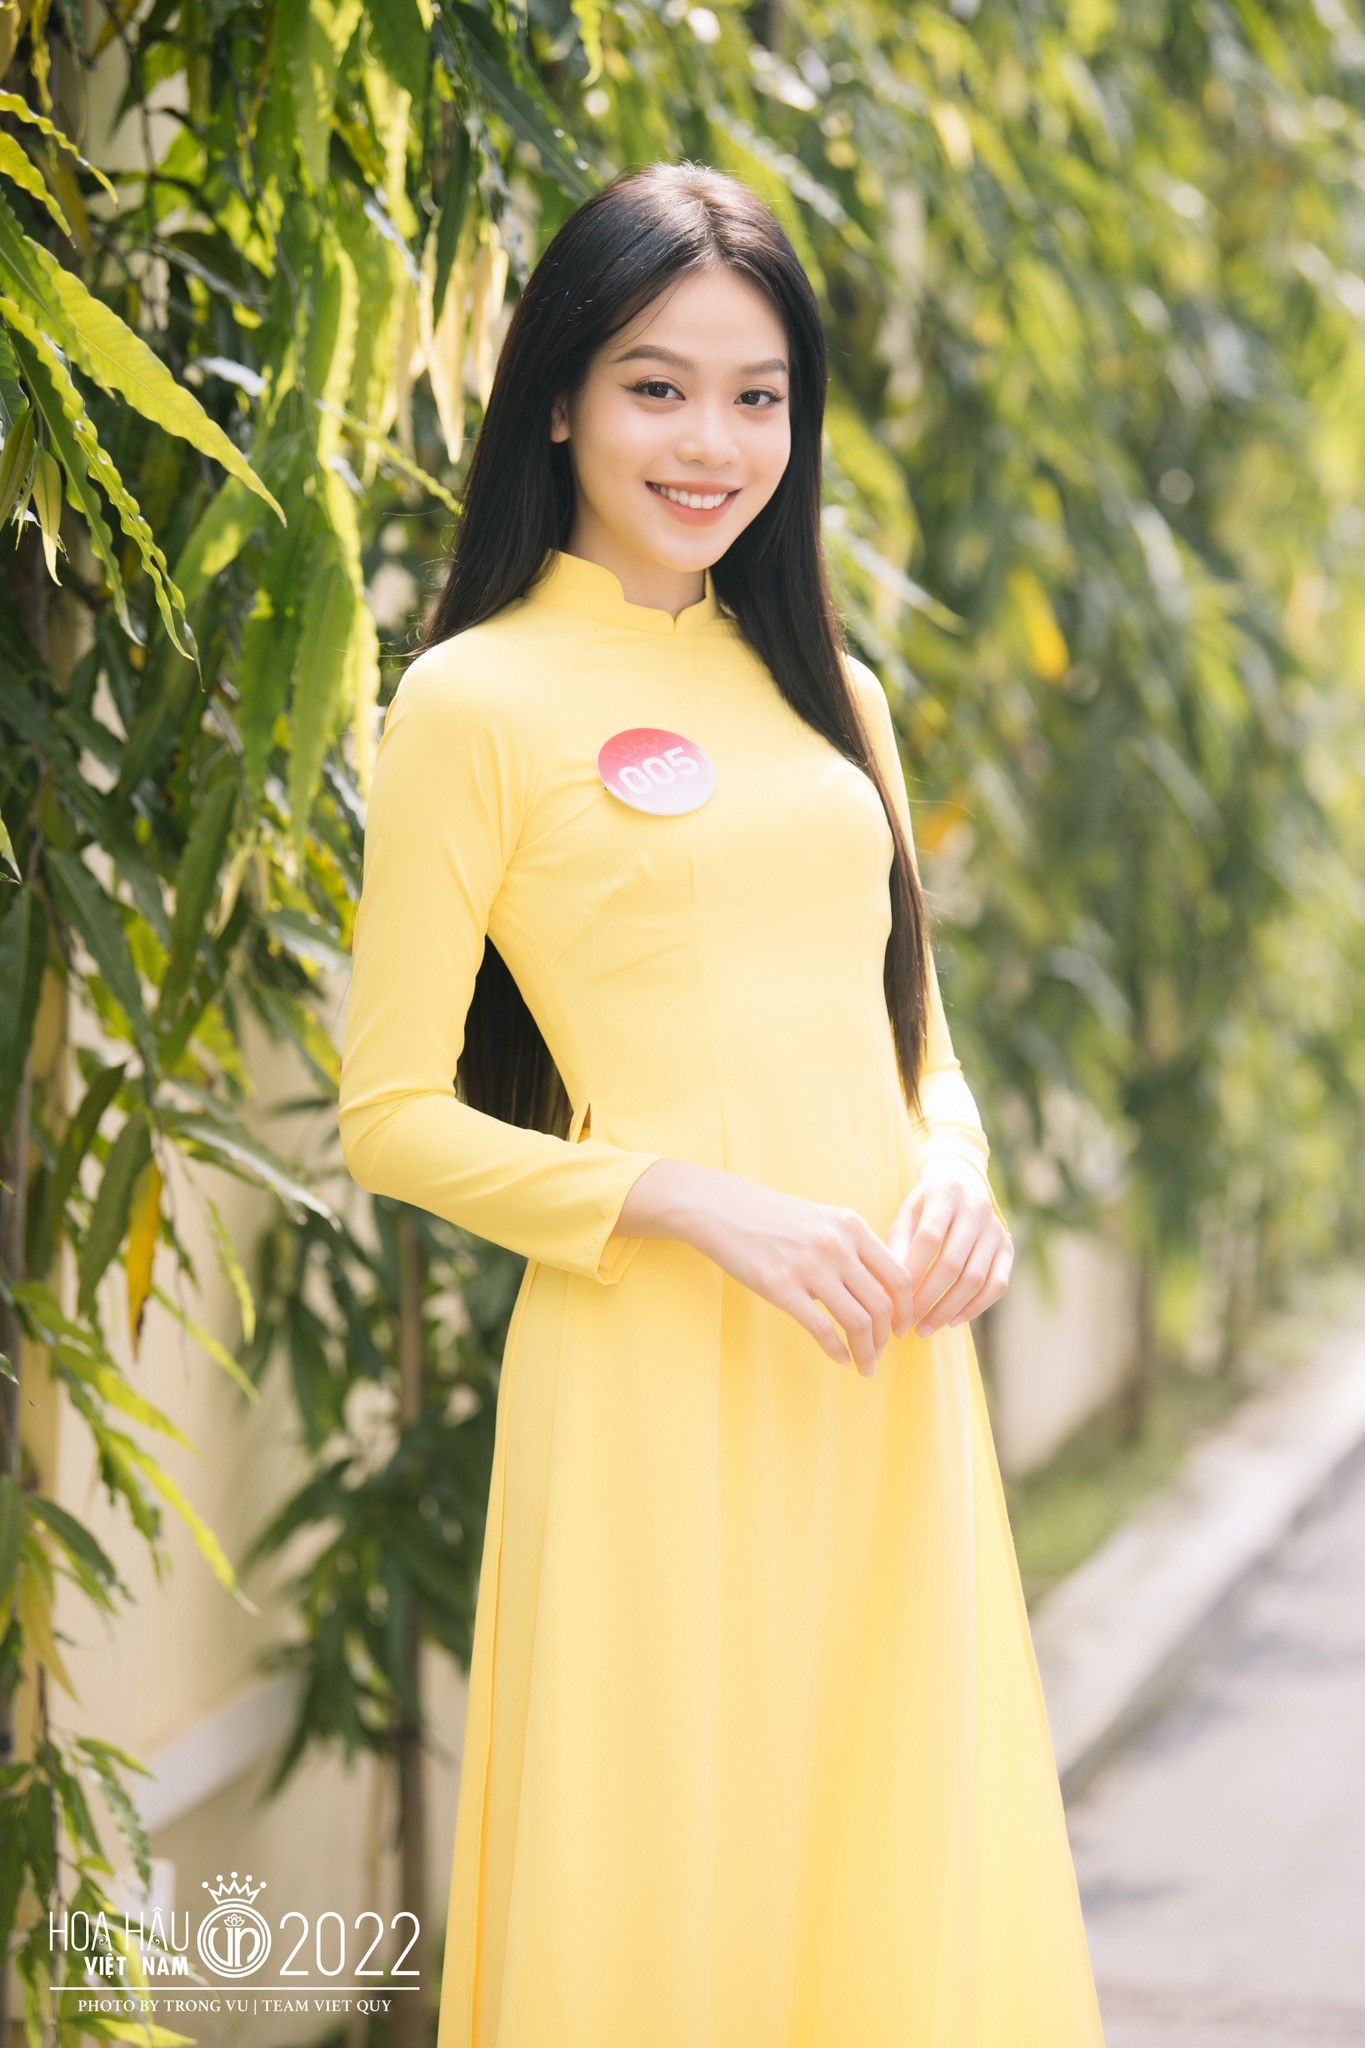 Cách Hoa hậu Huỳnh Thị Thanh Thủy gây chú ý-18